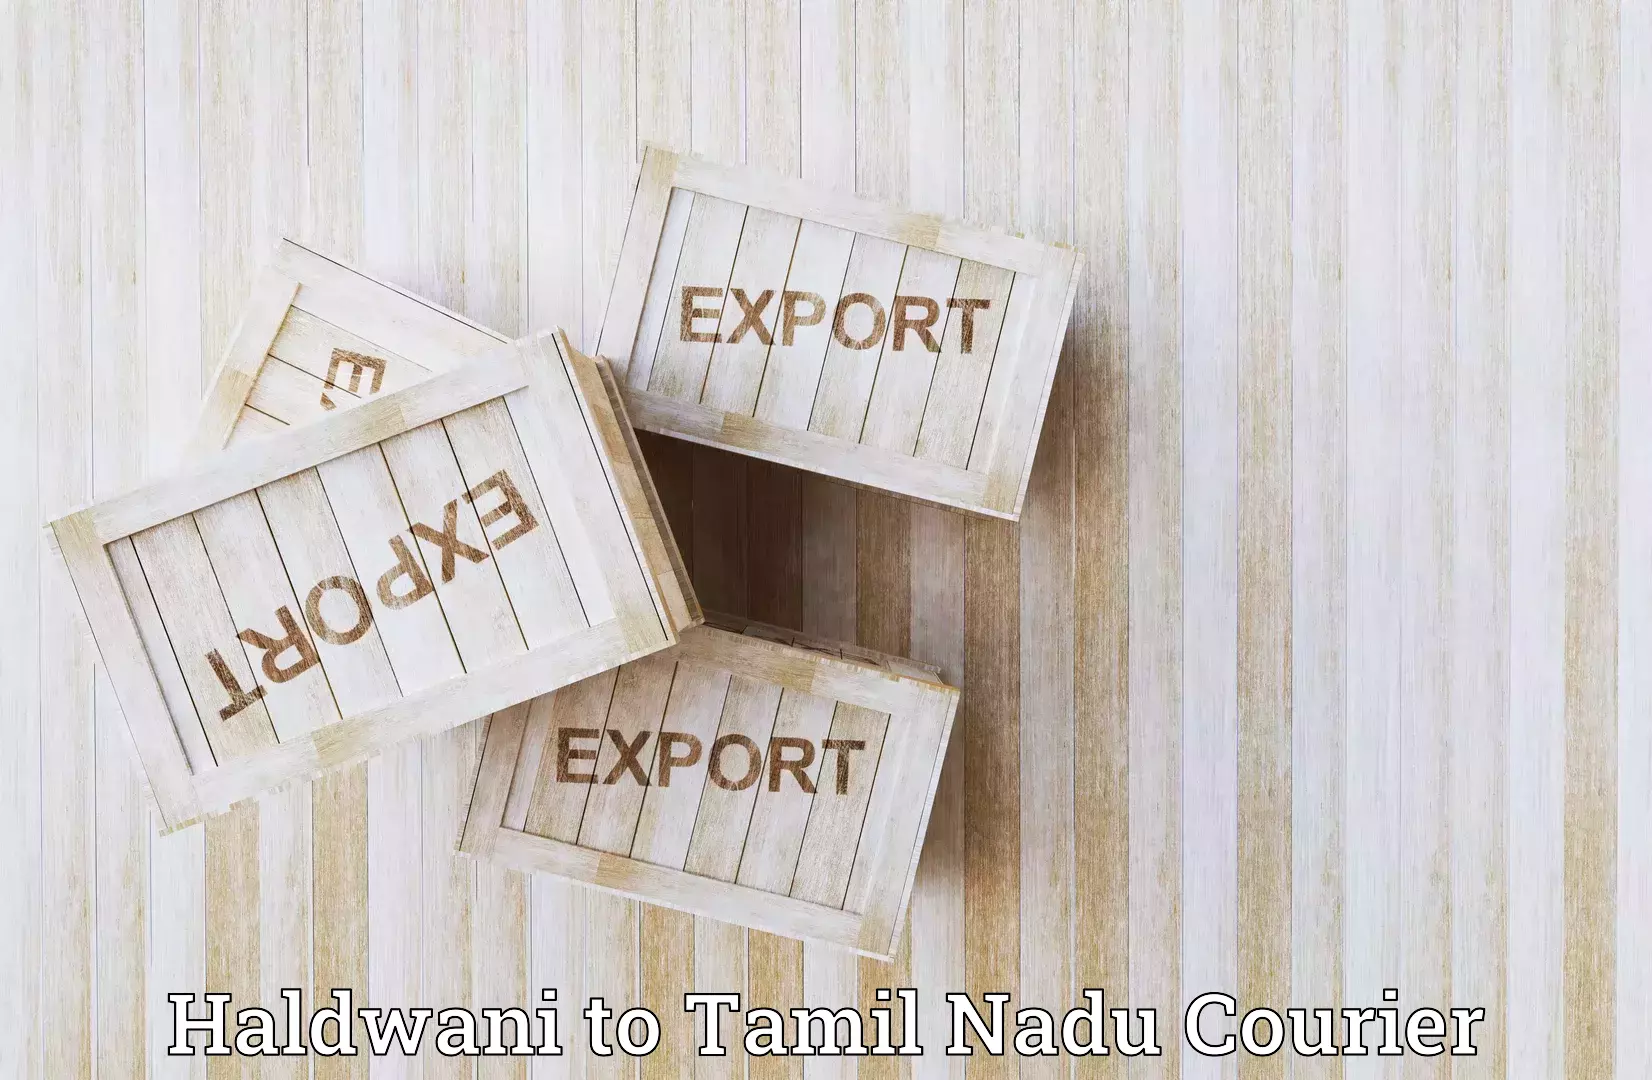 Express logistics providers Haldwani to Ayyampettai